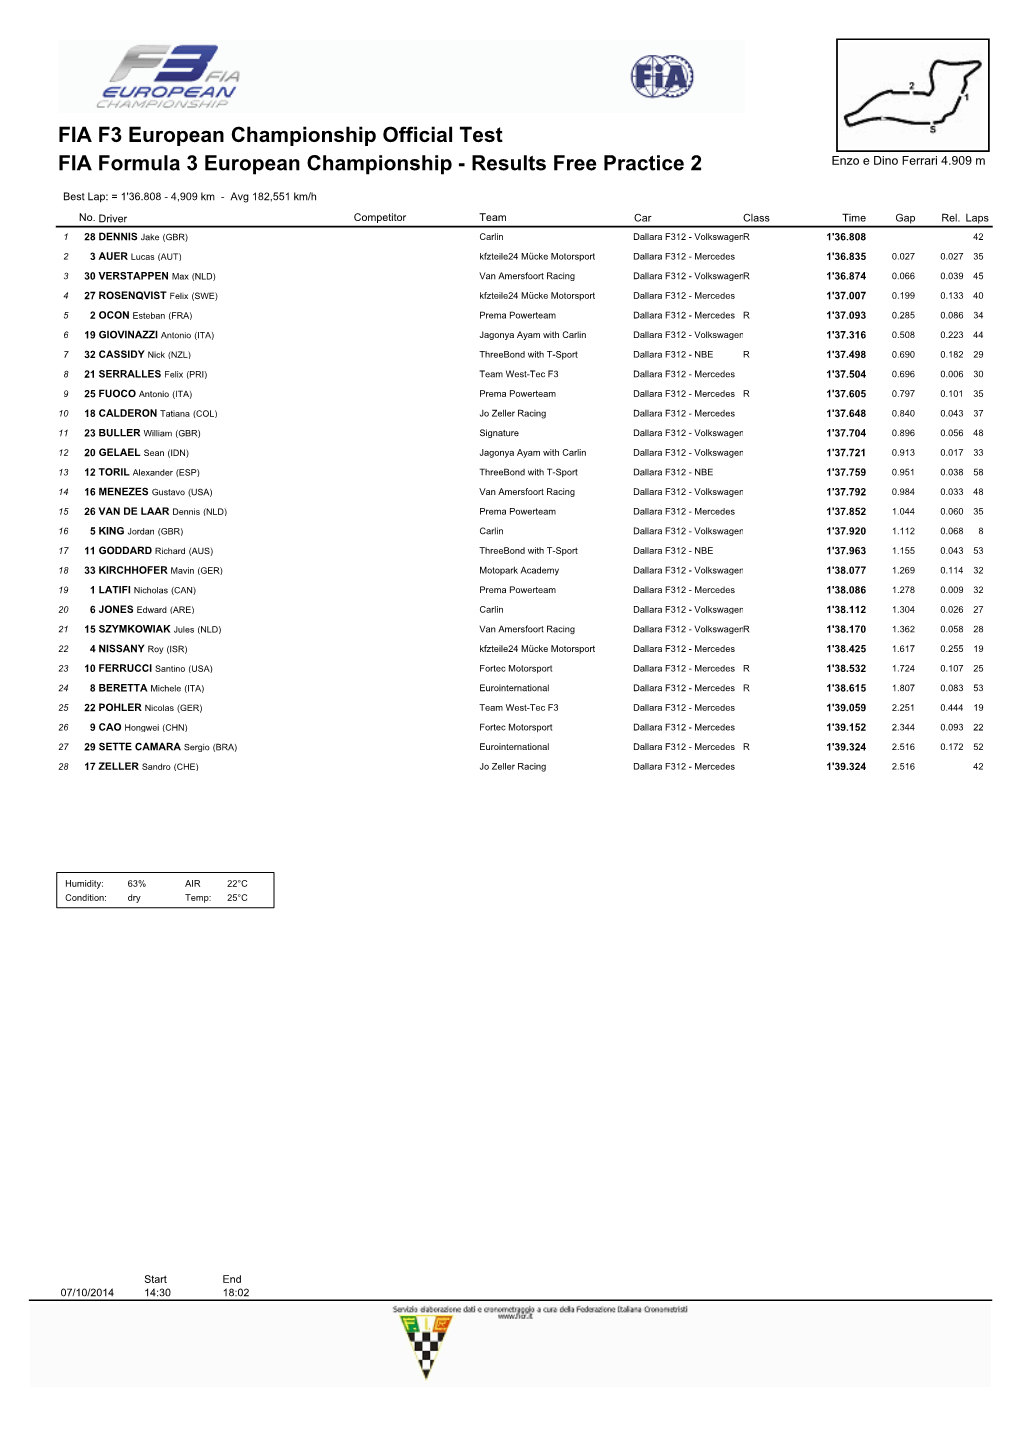 FIA Formula 3 European Championship - Results Free Practice 2 Enzo E Dino Ferrari 4.909 M